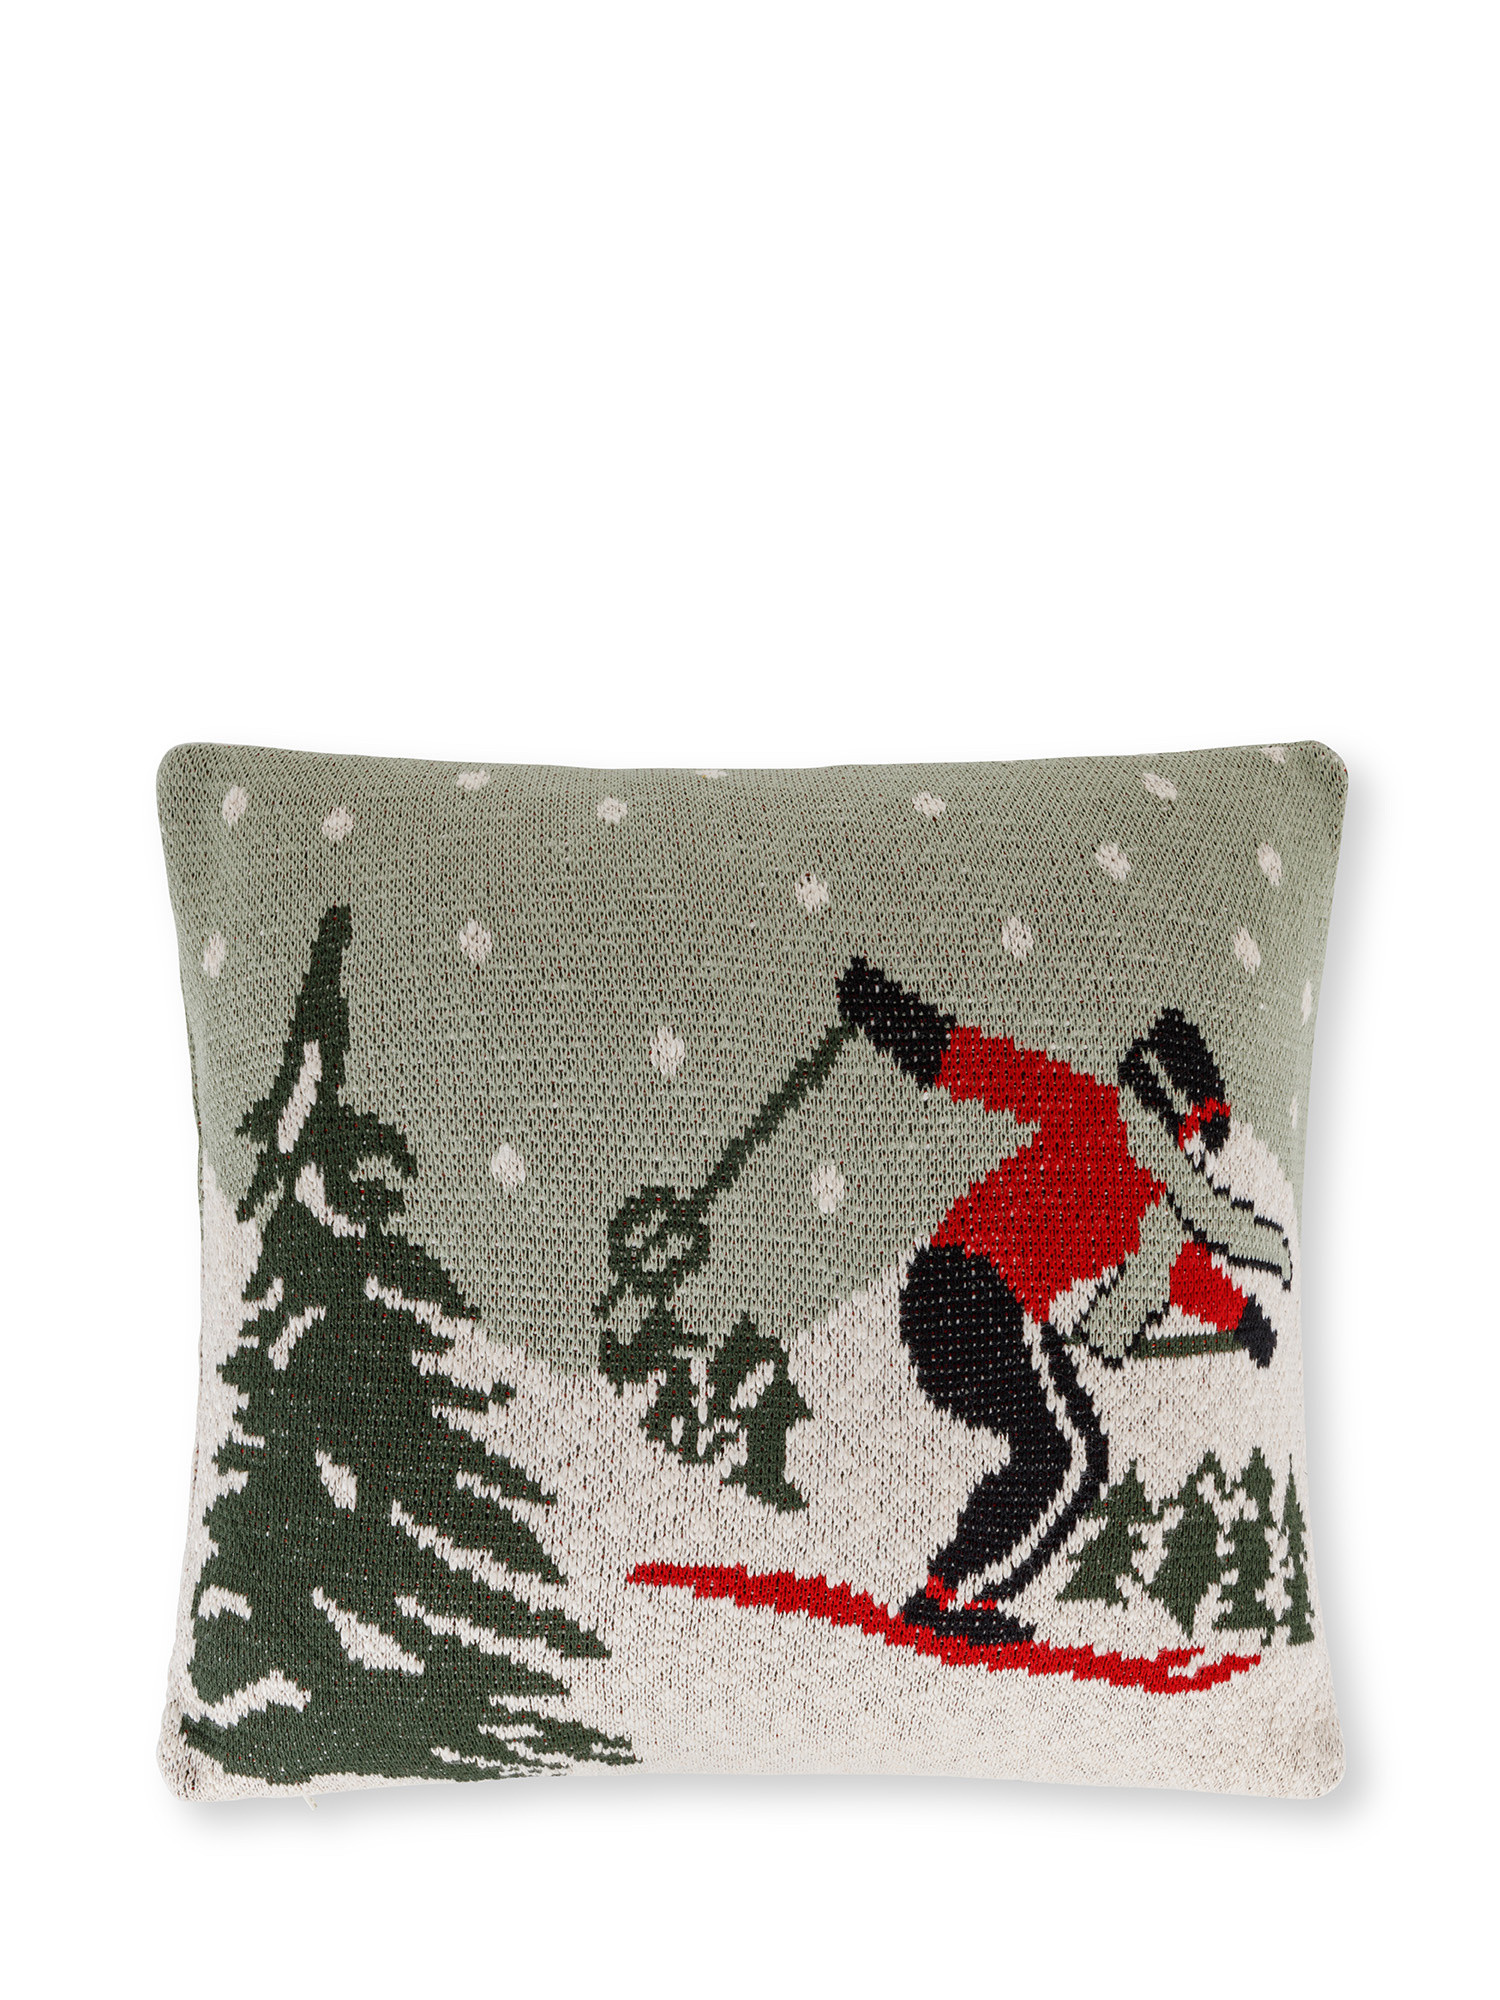 Cuscino in maglia jacquard motivo sciatore vintage 45x45 cm, Grigio, large image number 0